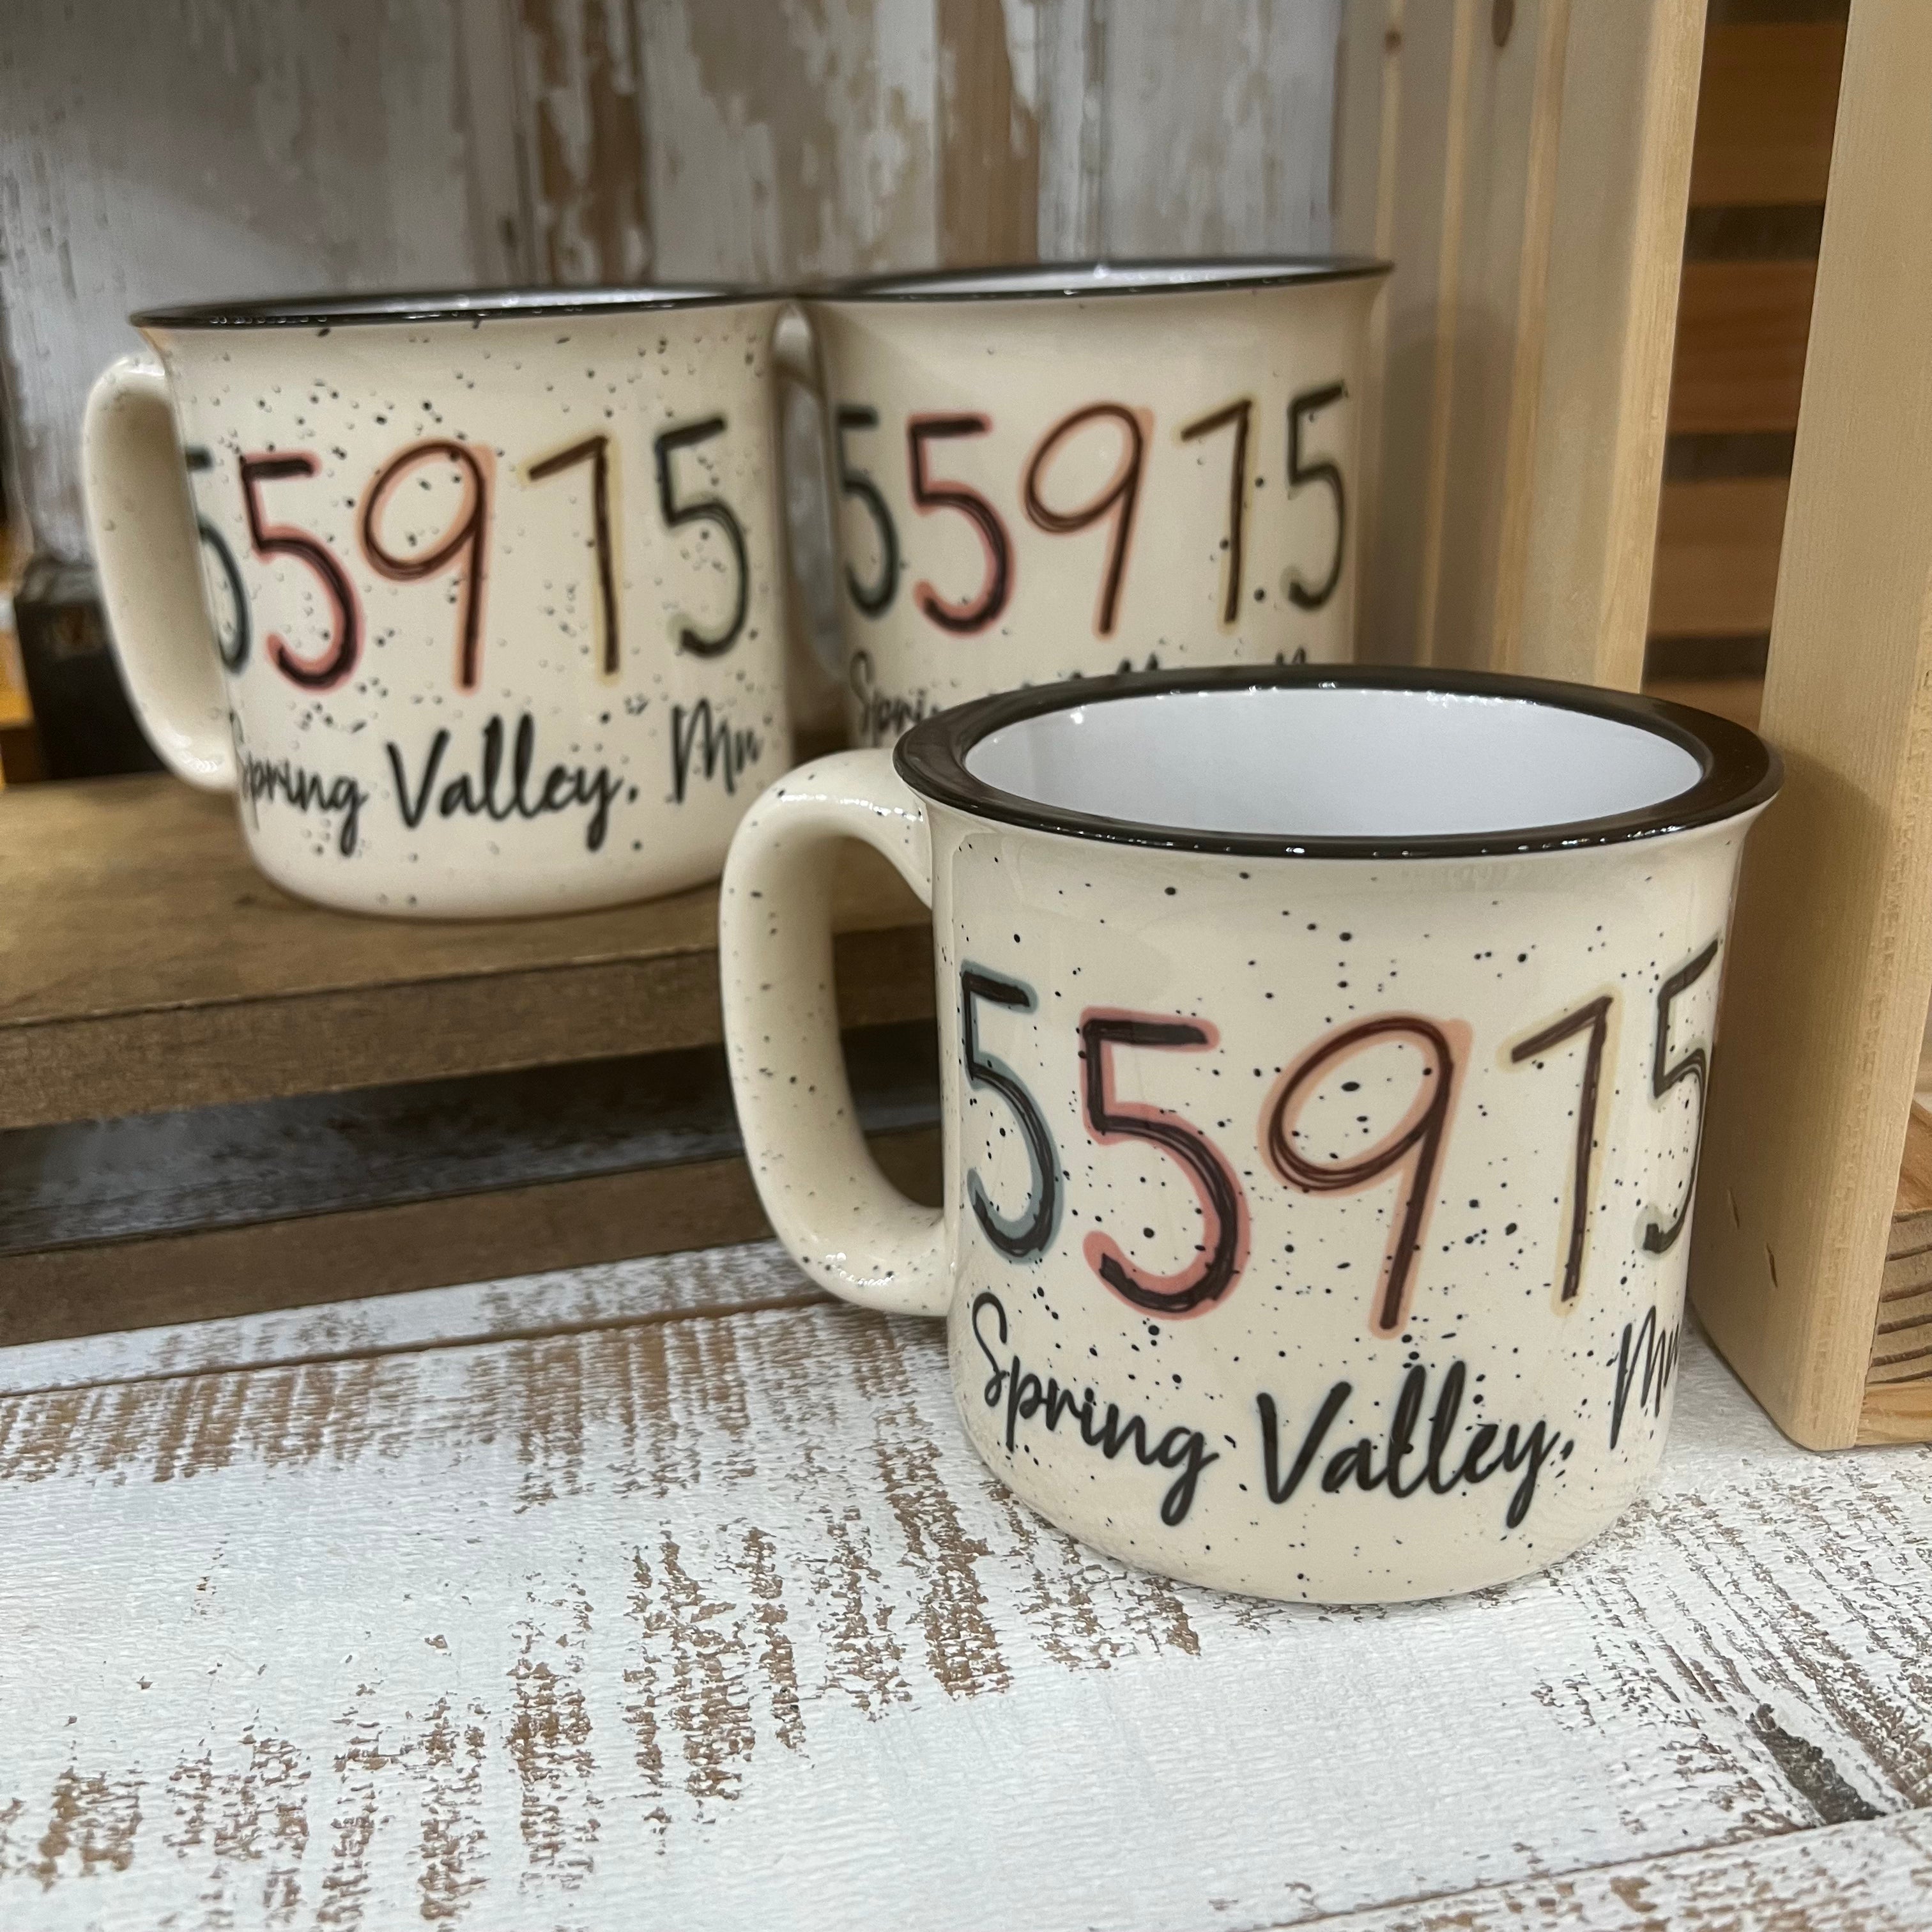 55975 Mug